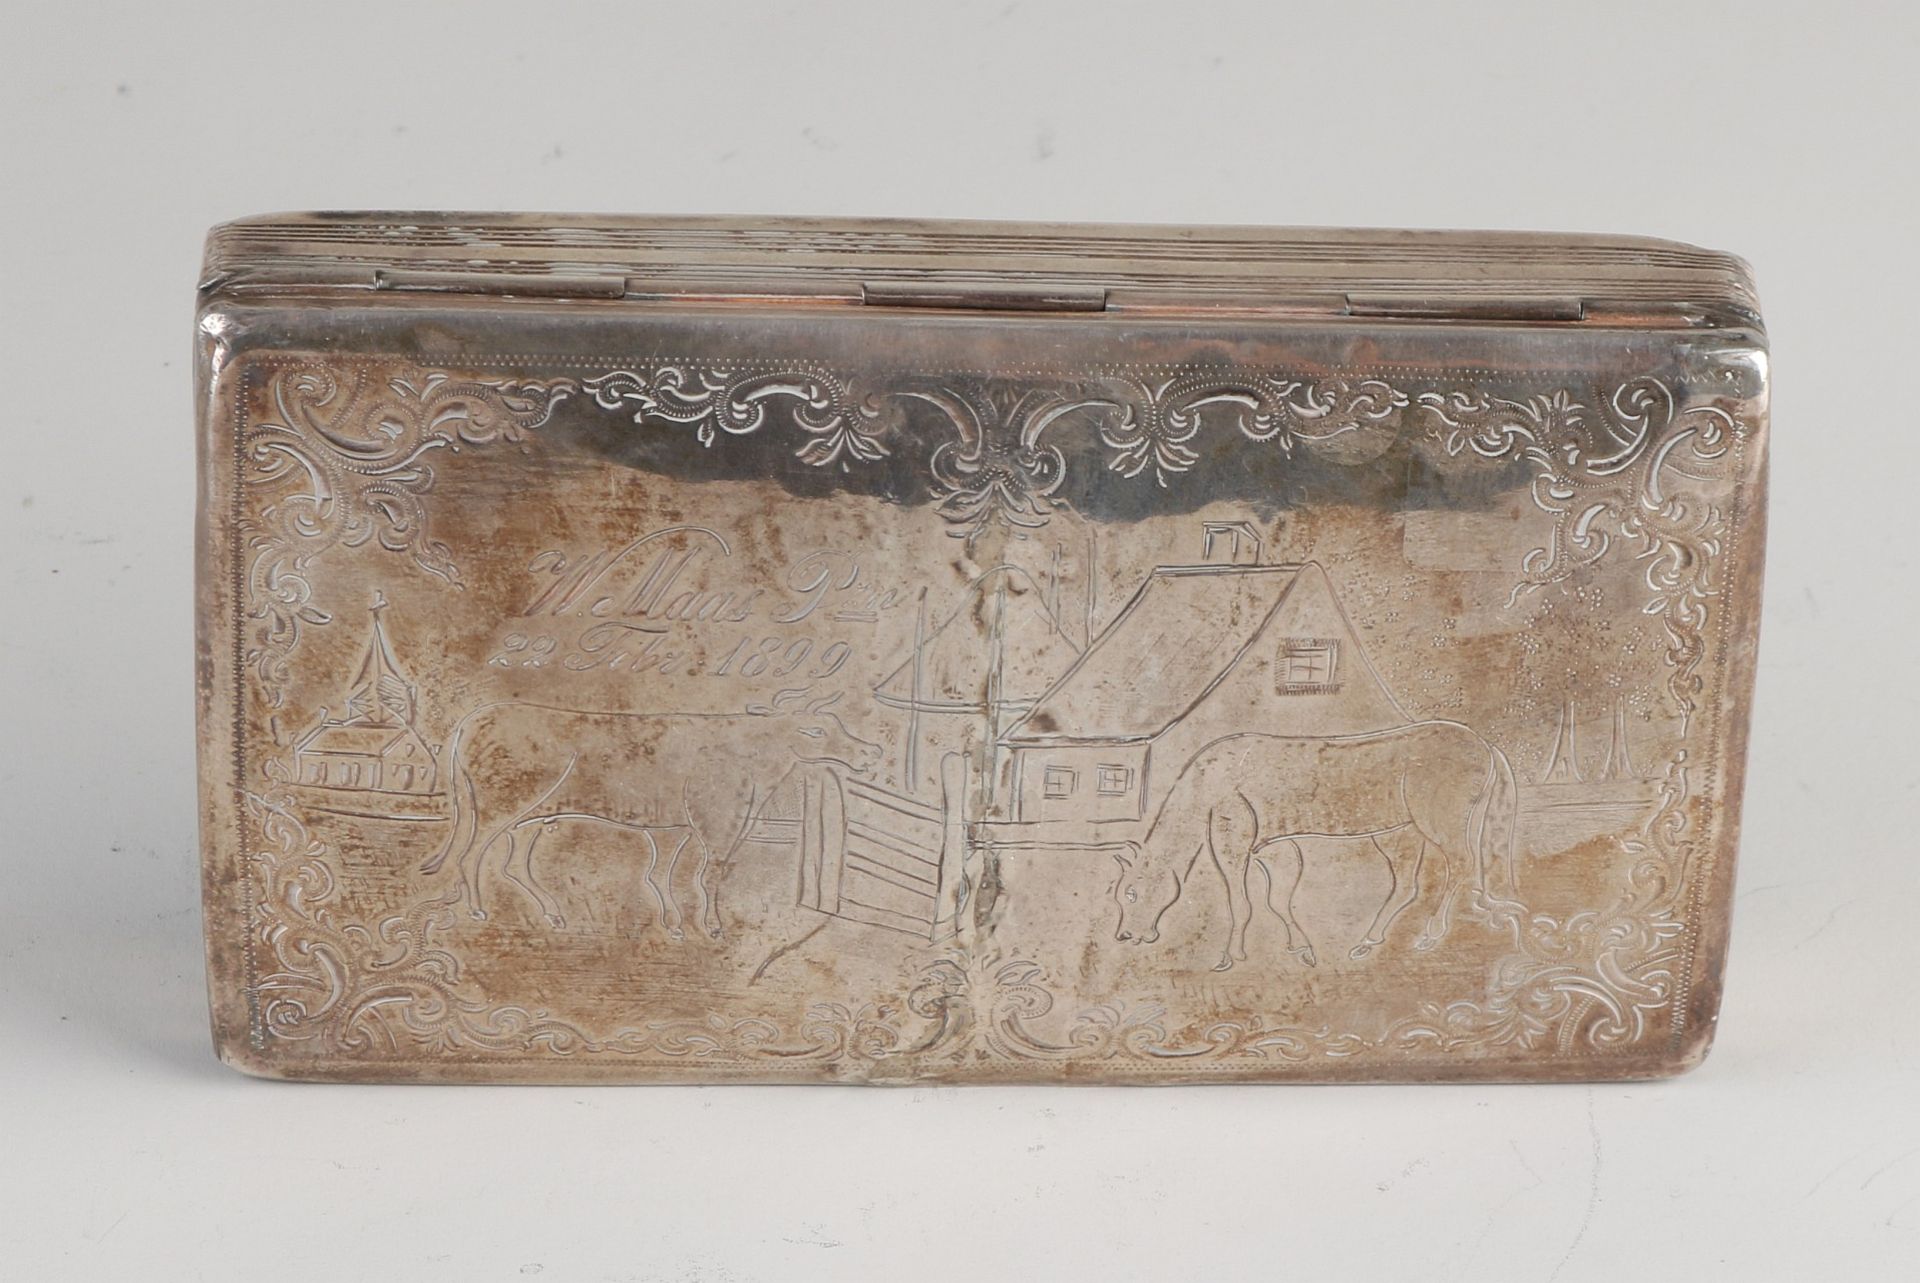 Silberne Tabakdose, 833/000, rechteckiges Modell mit einer eingravierten Darstellung eines Pferdes - Bild 2 aus 2